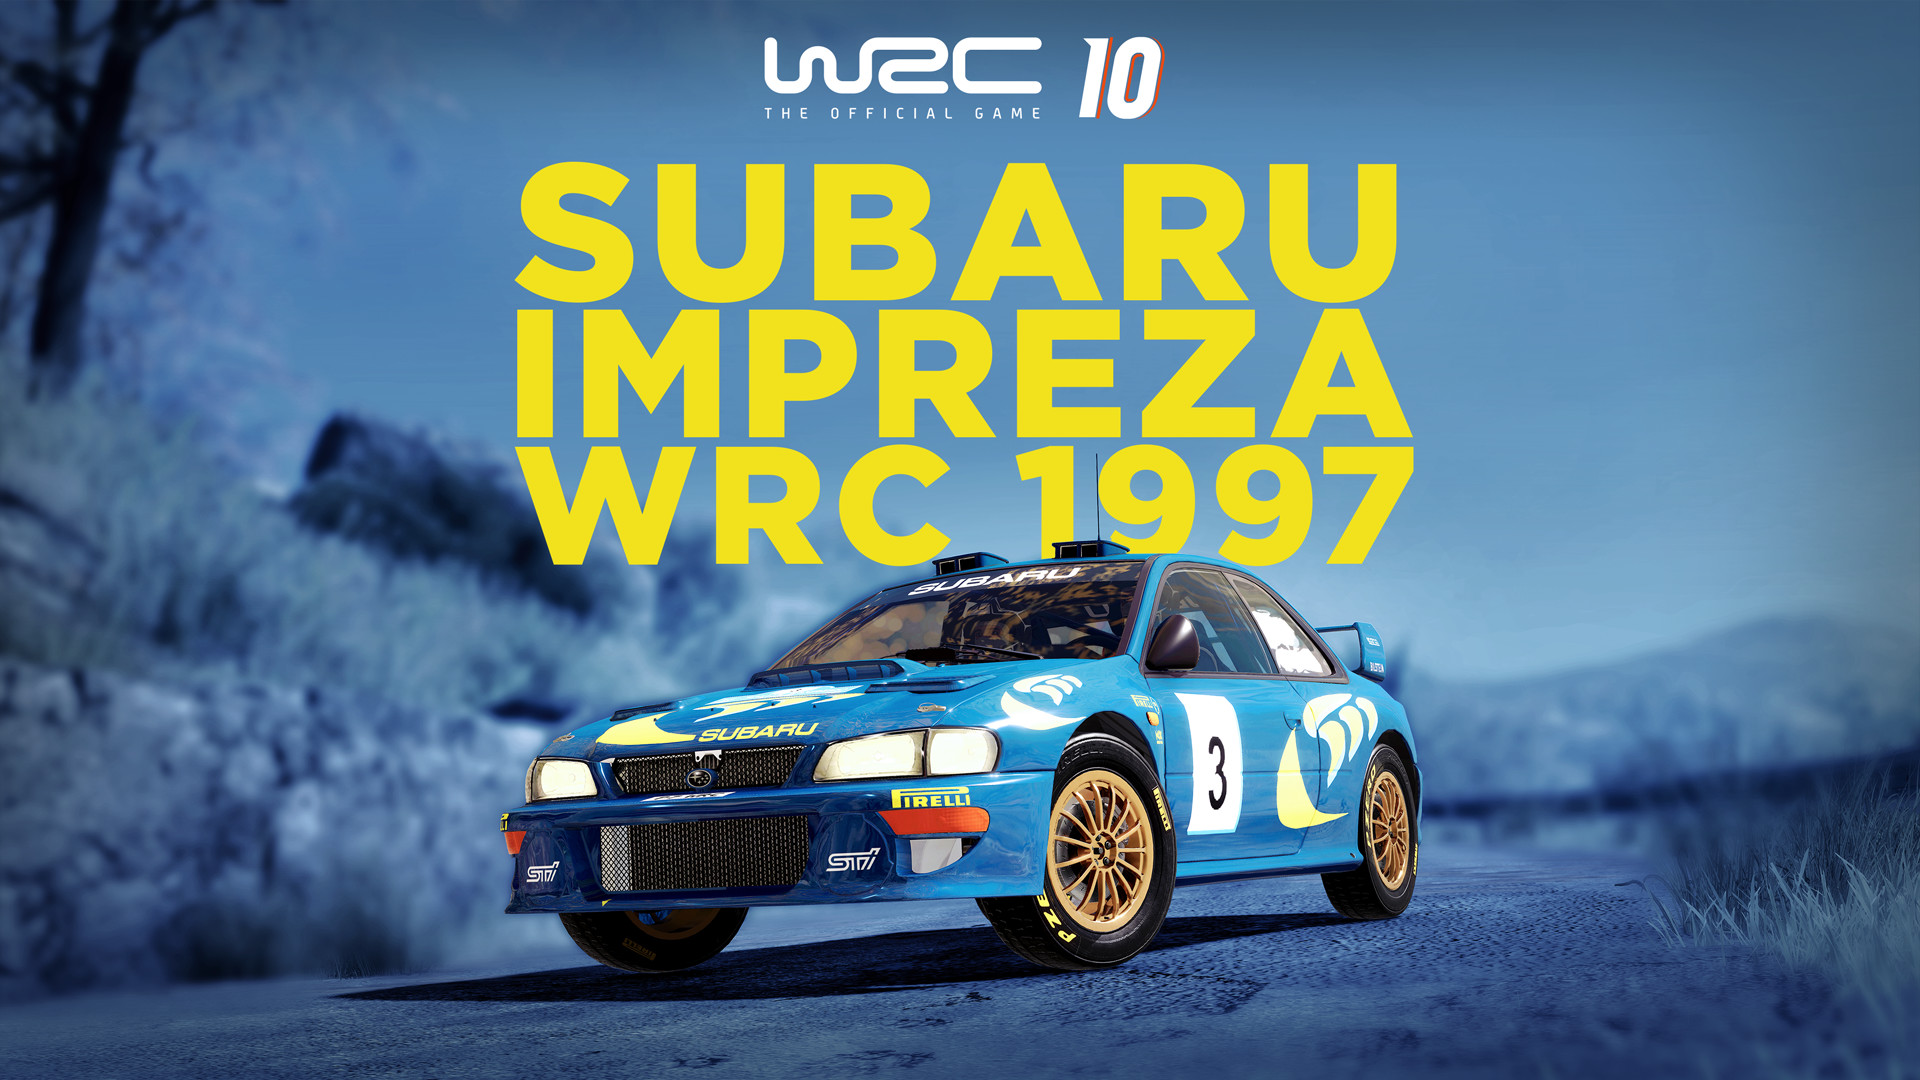 WRC 10 - Subaru Impreza WRC 1997 DLC Steam CD Key, $3.33